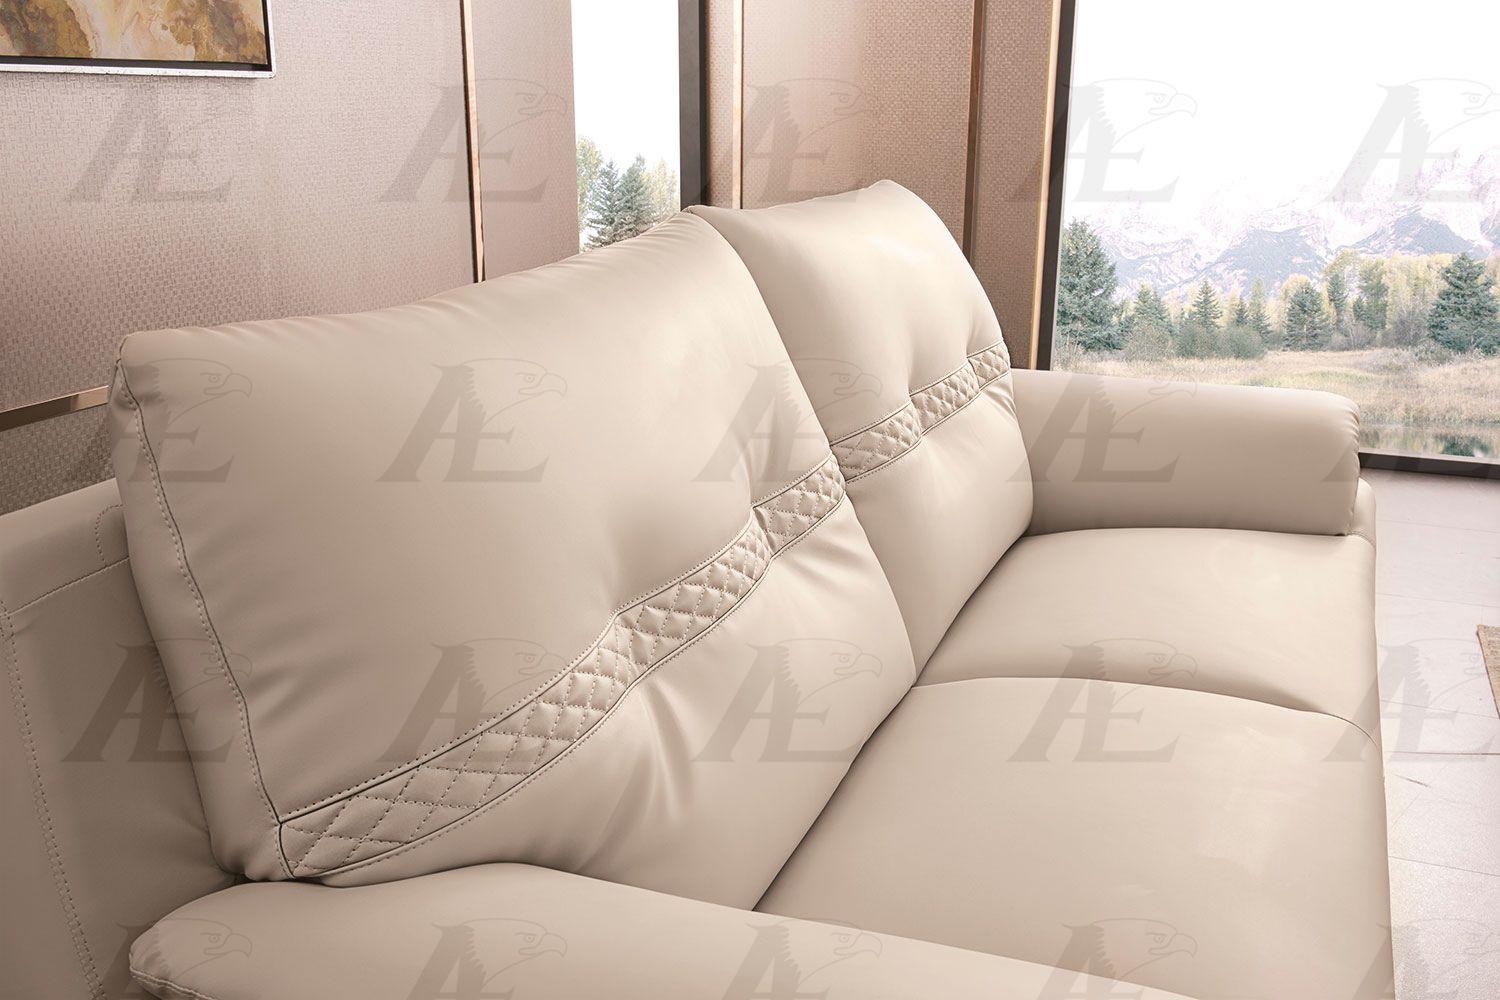 

    
AE628-LAG -Set-3 American Eagle Furniture Sofa Set
